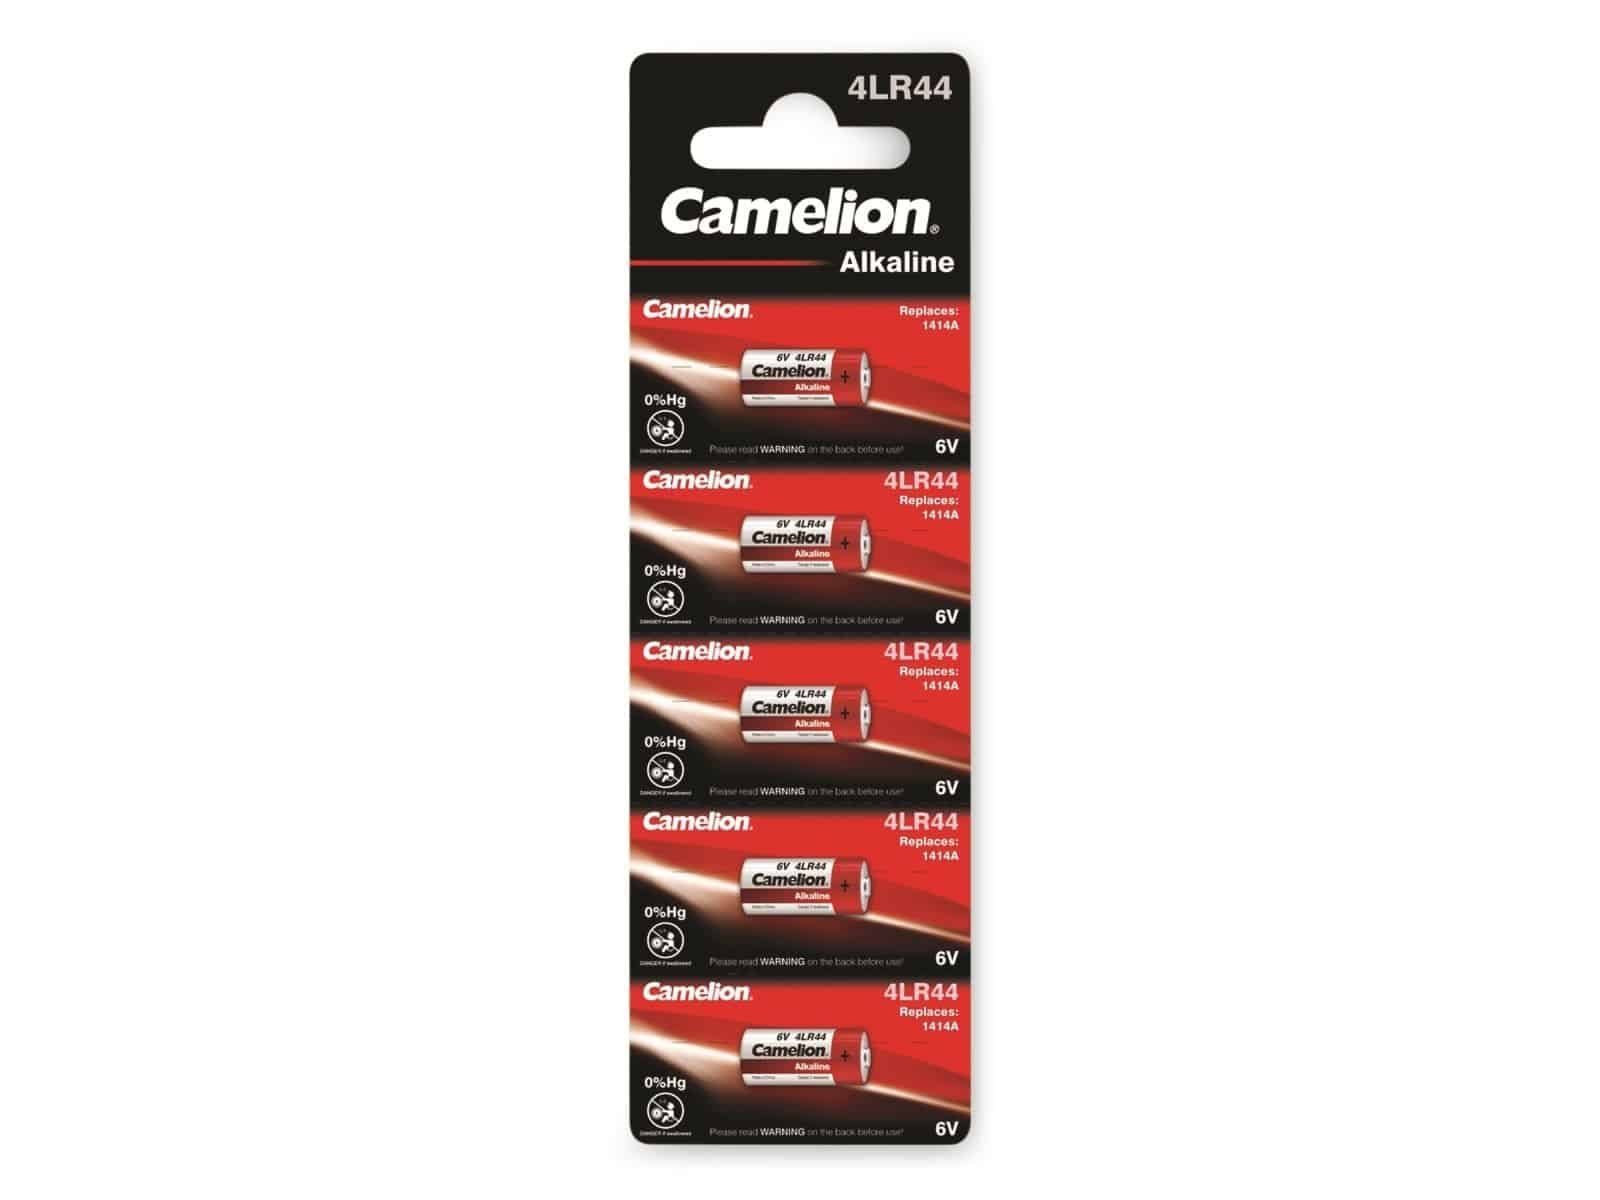 Camelion CAMELION Alkaline-Batterie 4LR44 5 Stück Batterie